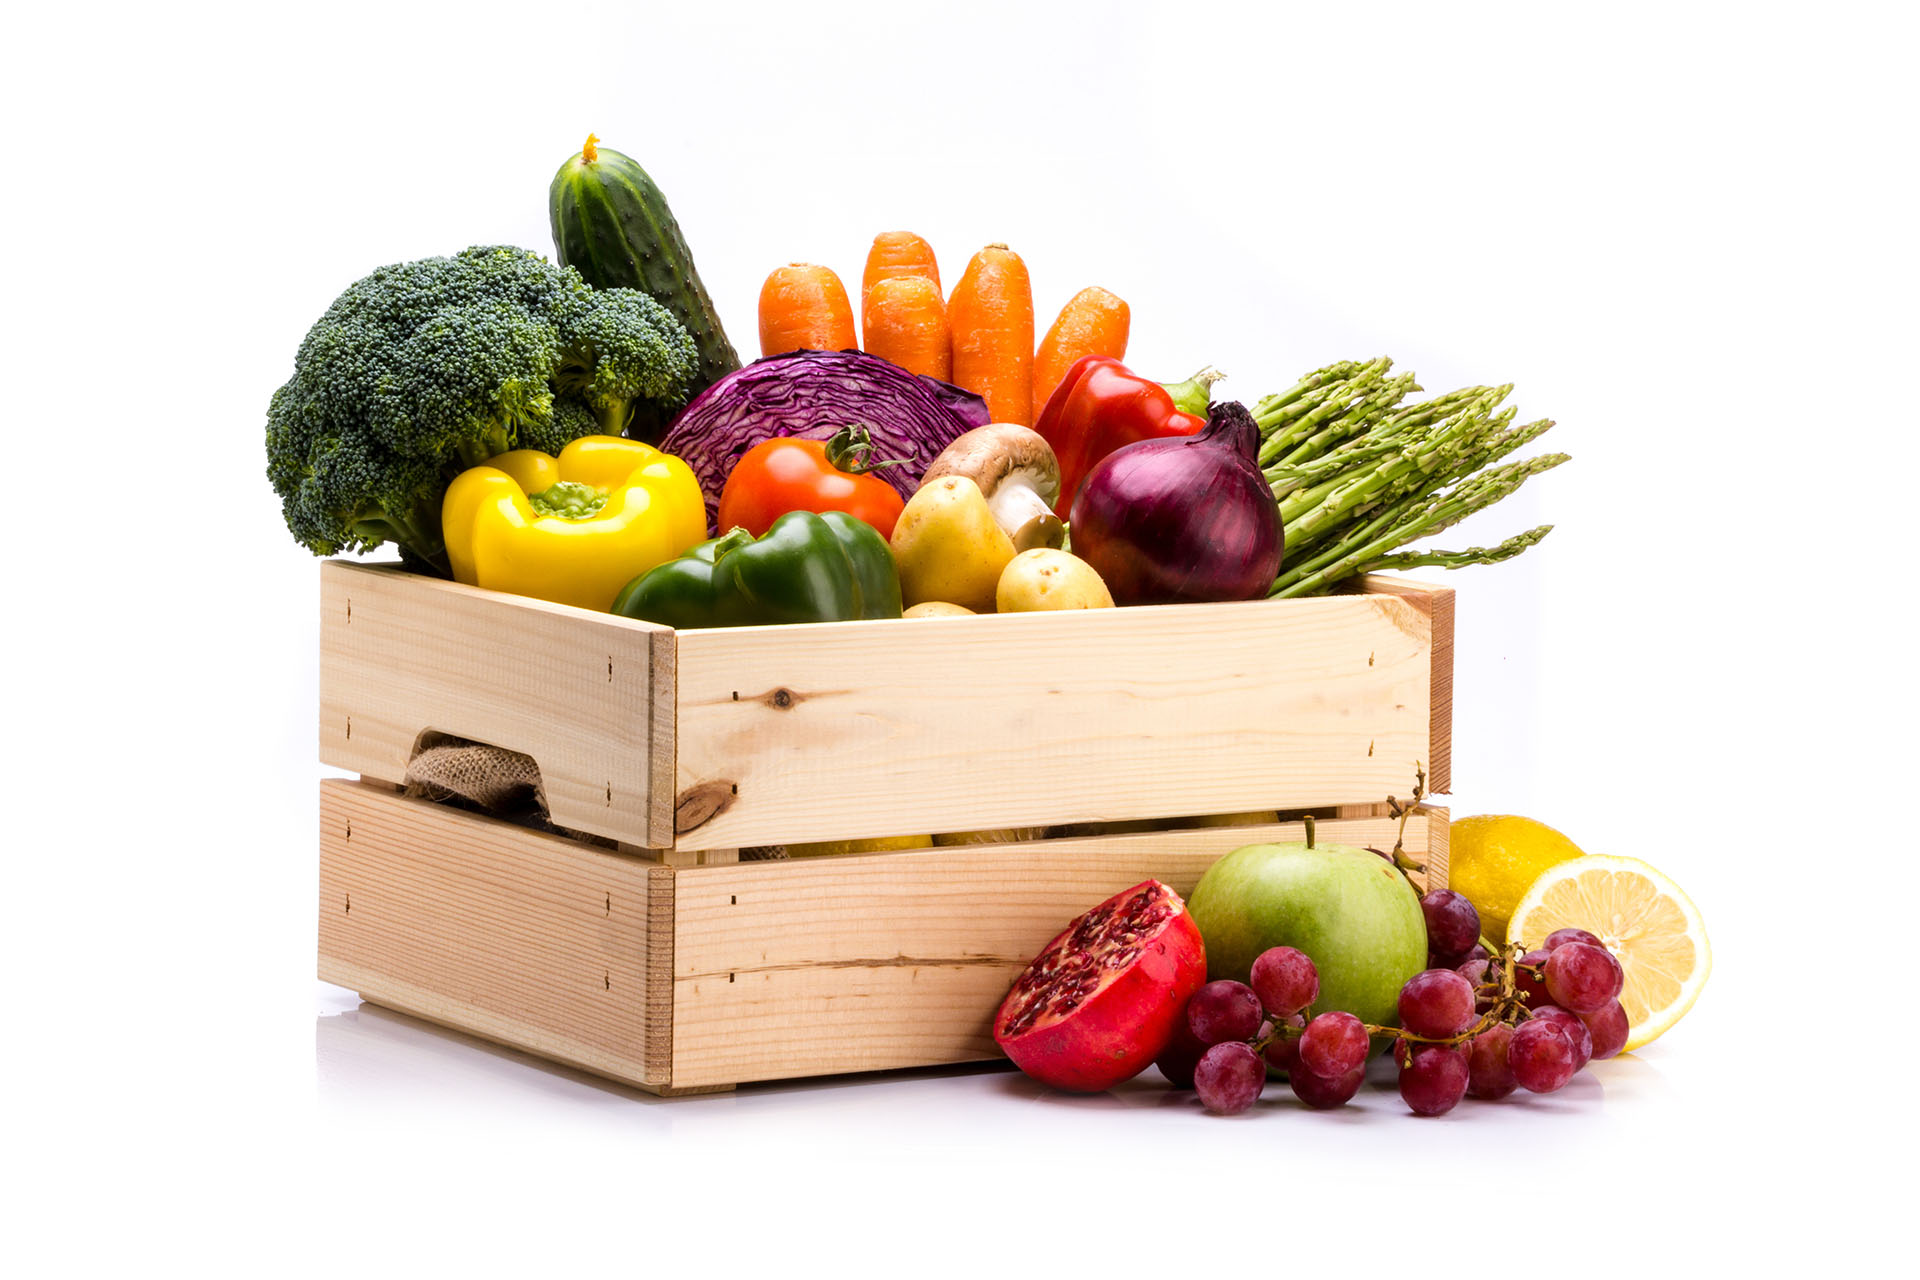 Il tuo cesto settimanale  Ronca frutta e verdura di qualità